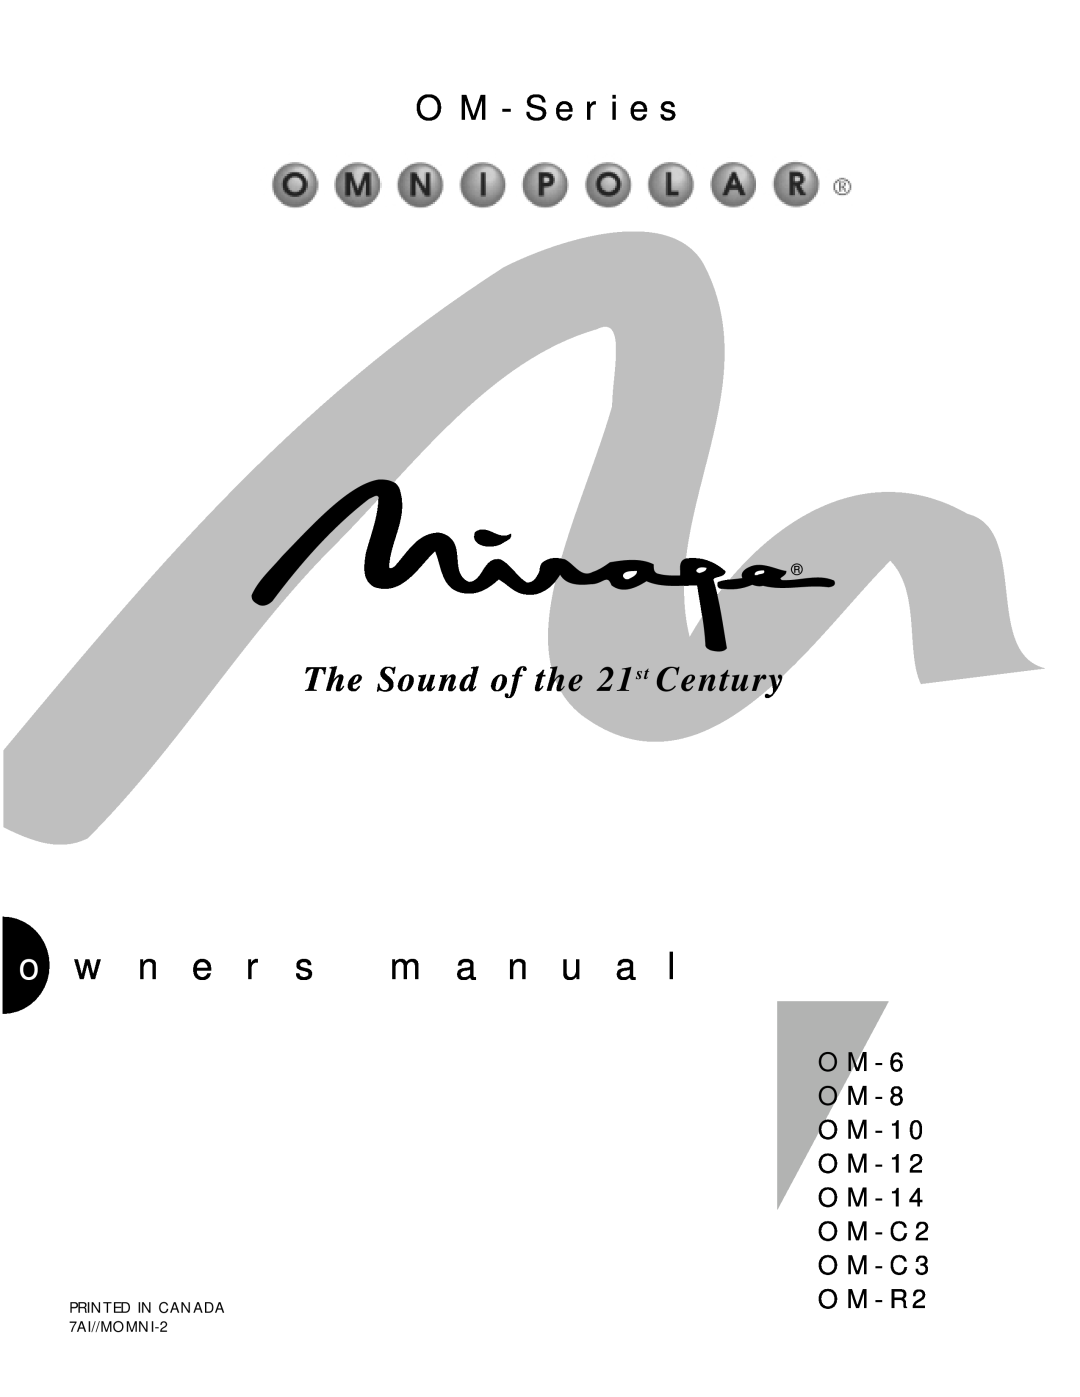 Mirage Loudspeakers OM - 8, OM - C3 owner manual o w n e r s m a n u a l, O M - S e r i e s, The Sound of the 21st Century 